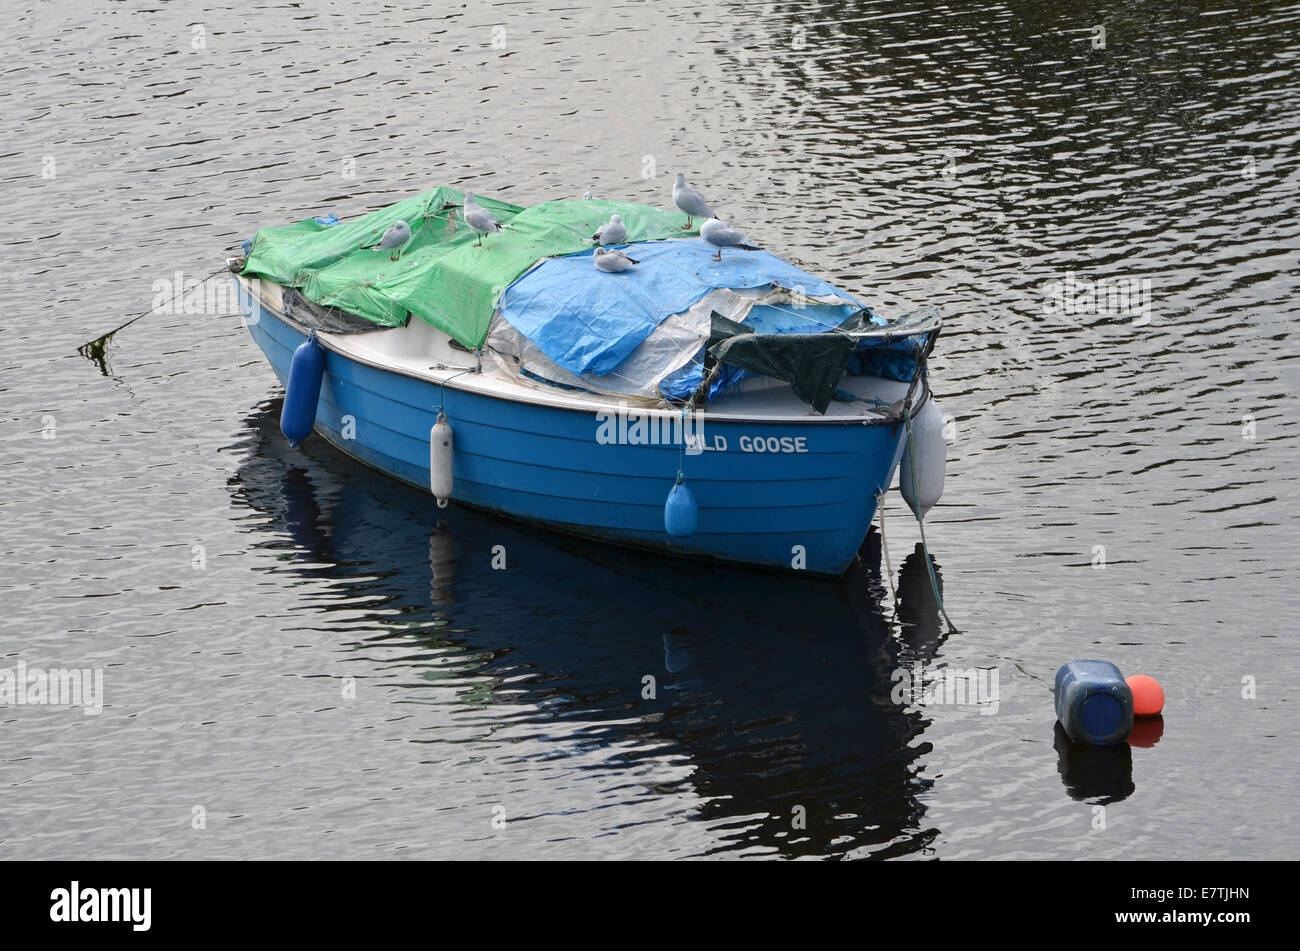 Wildgans, ein Boot über den Fluß Leven in Dumbarton mit mehreren Möwen auf ihm ruhen. Stockfoto